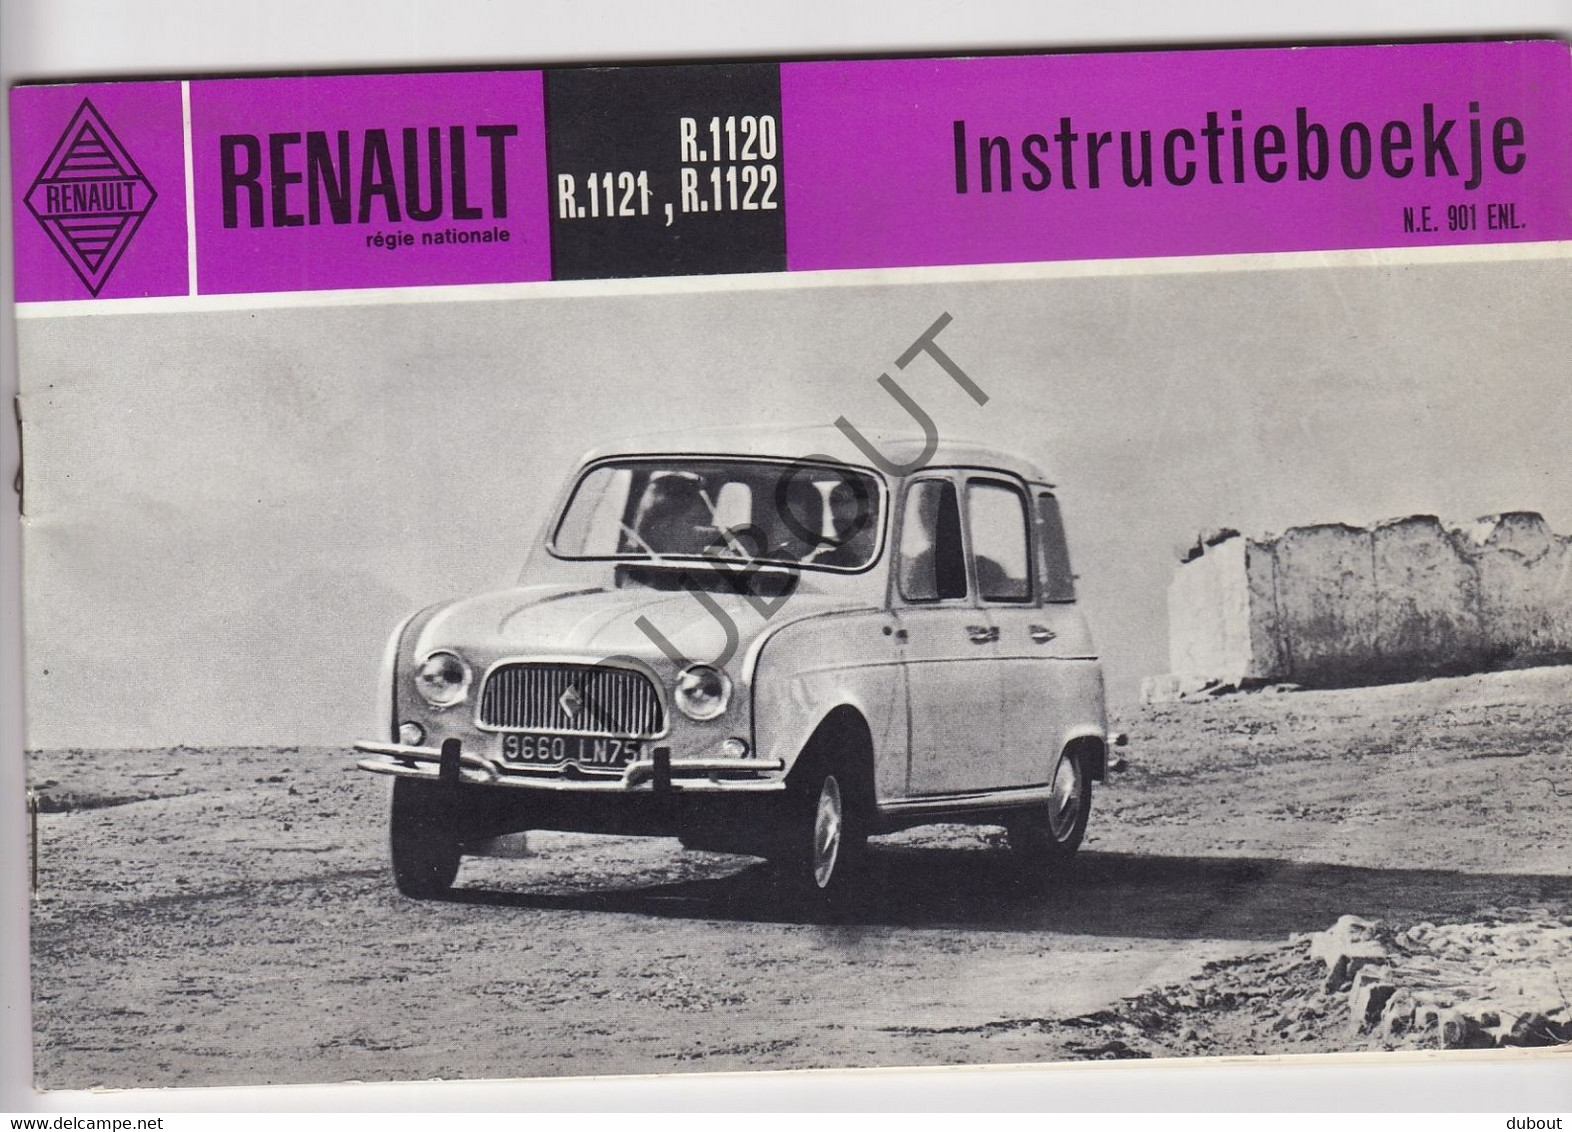 Renault - Reclameboekje/Instructieboekje Renault R1120/1122 - Jaren '60-'70   (V1203) - Practical